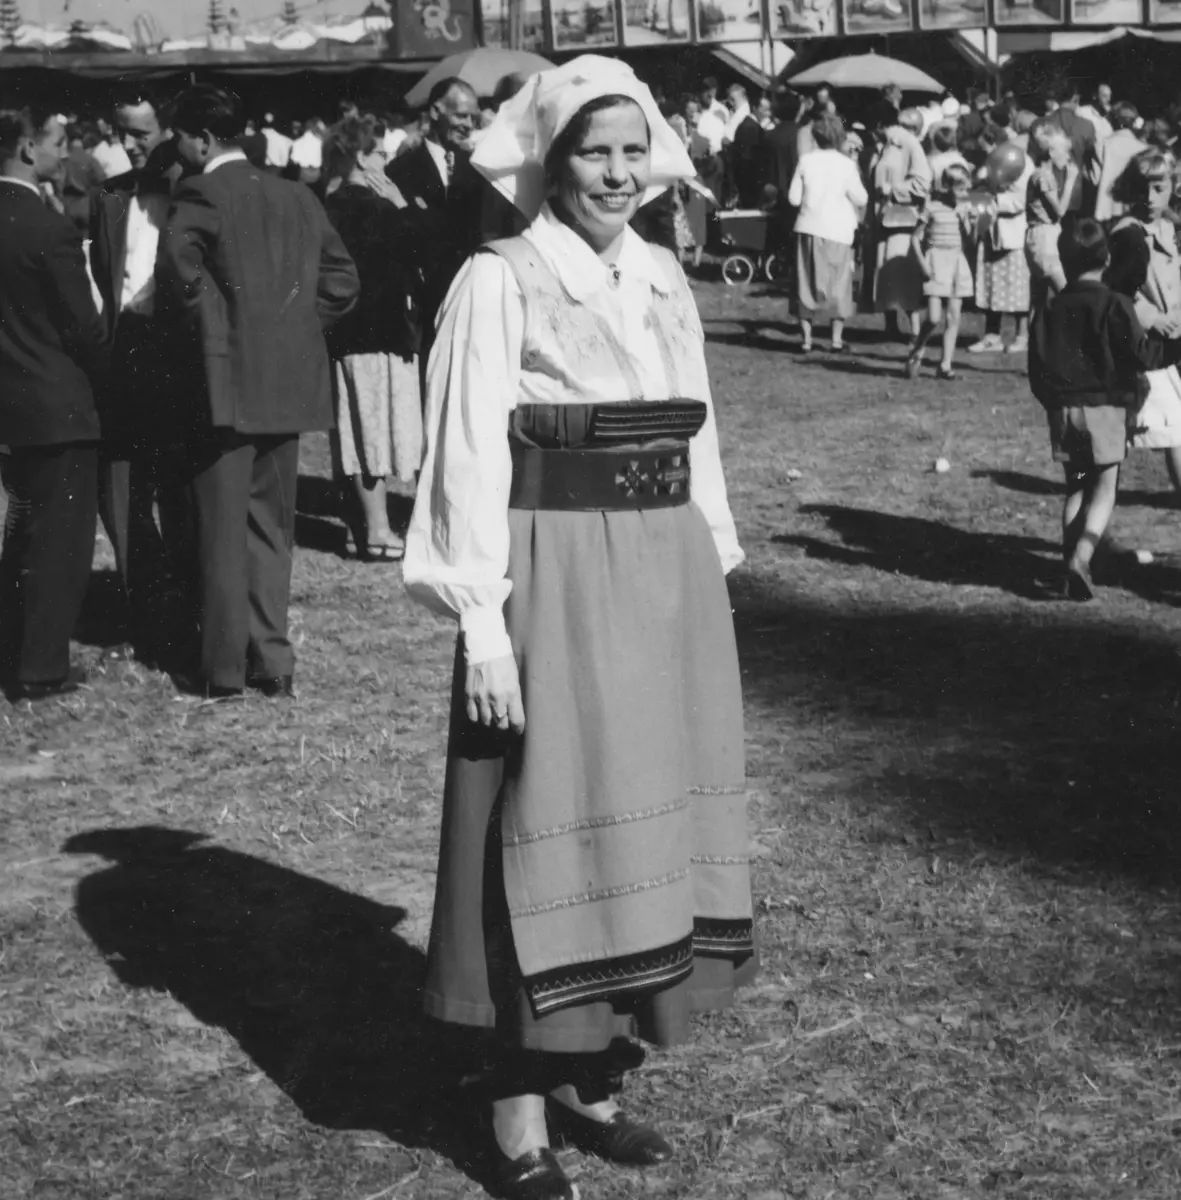 Turinge Marknad 1956. Marknadsbesökare Rut Haglund från Ladvreta i Nykvarn, dagen till ära är uppklädd i folkdräkt